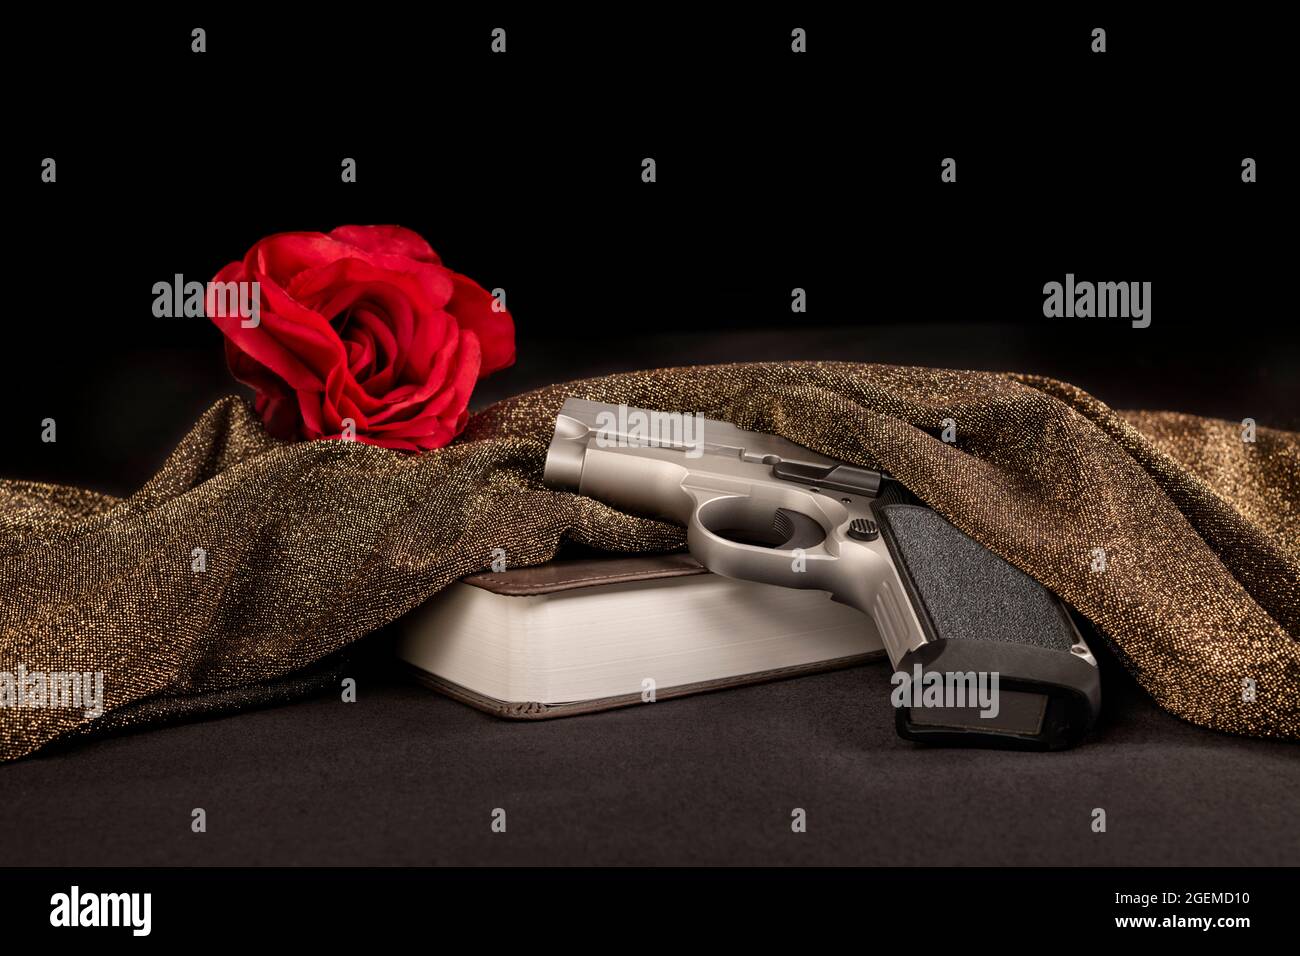 Dans le cadre d'une organisation criminelle, cette image représente une rose rouge symbolique derrière une bible et un fusil, un rituel prémeurtrier des hommes à frapper mafieux. Banque D'Images